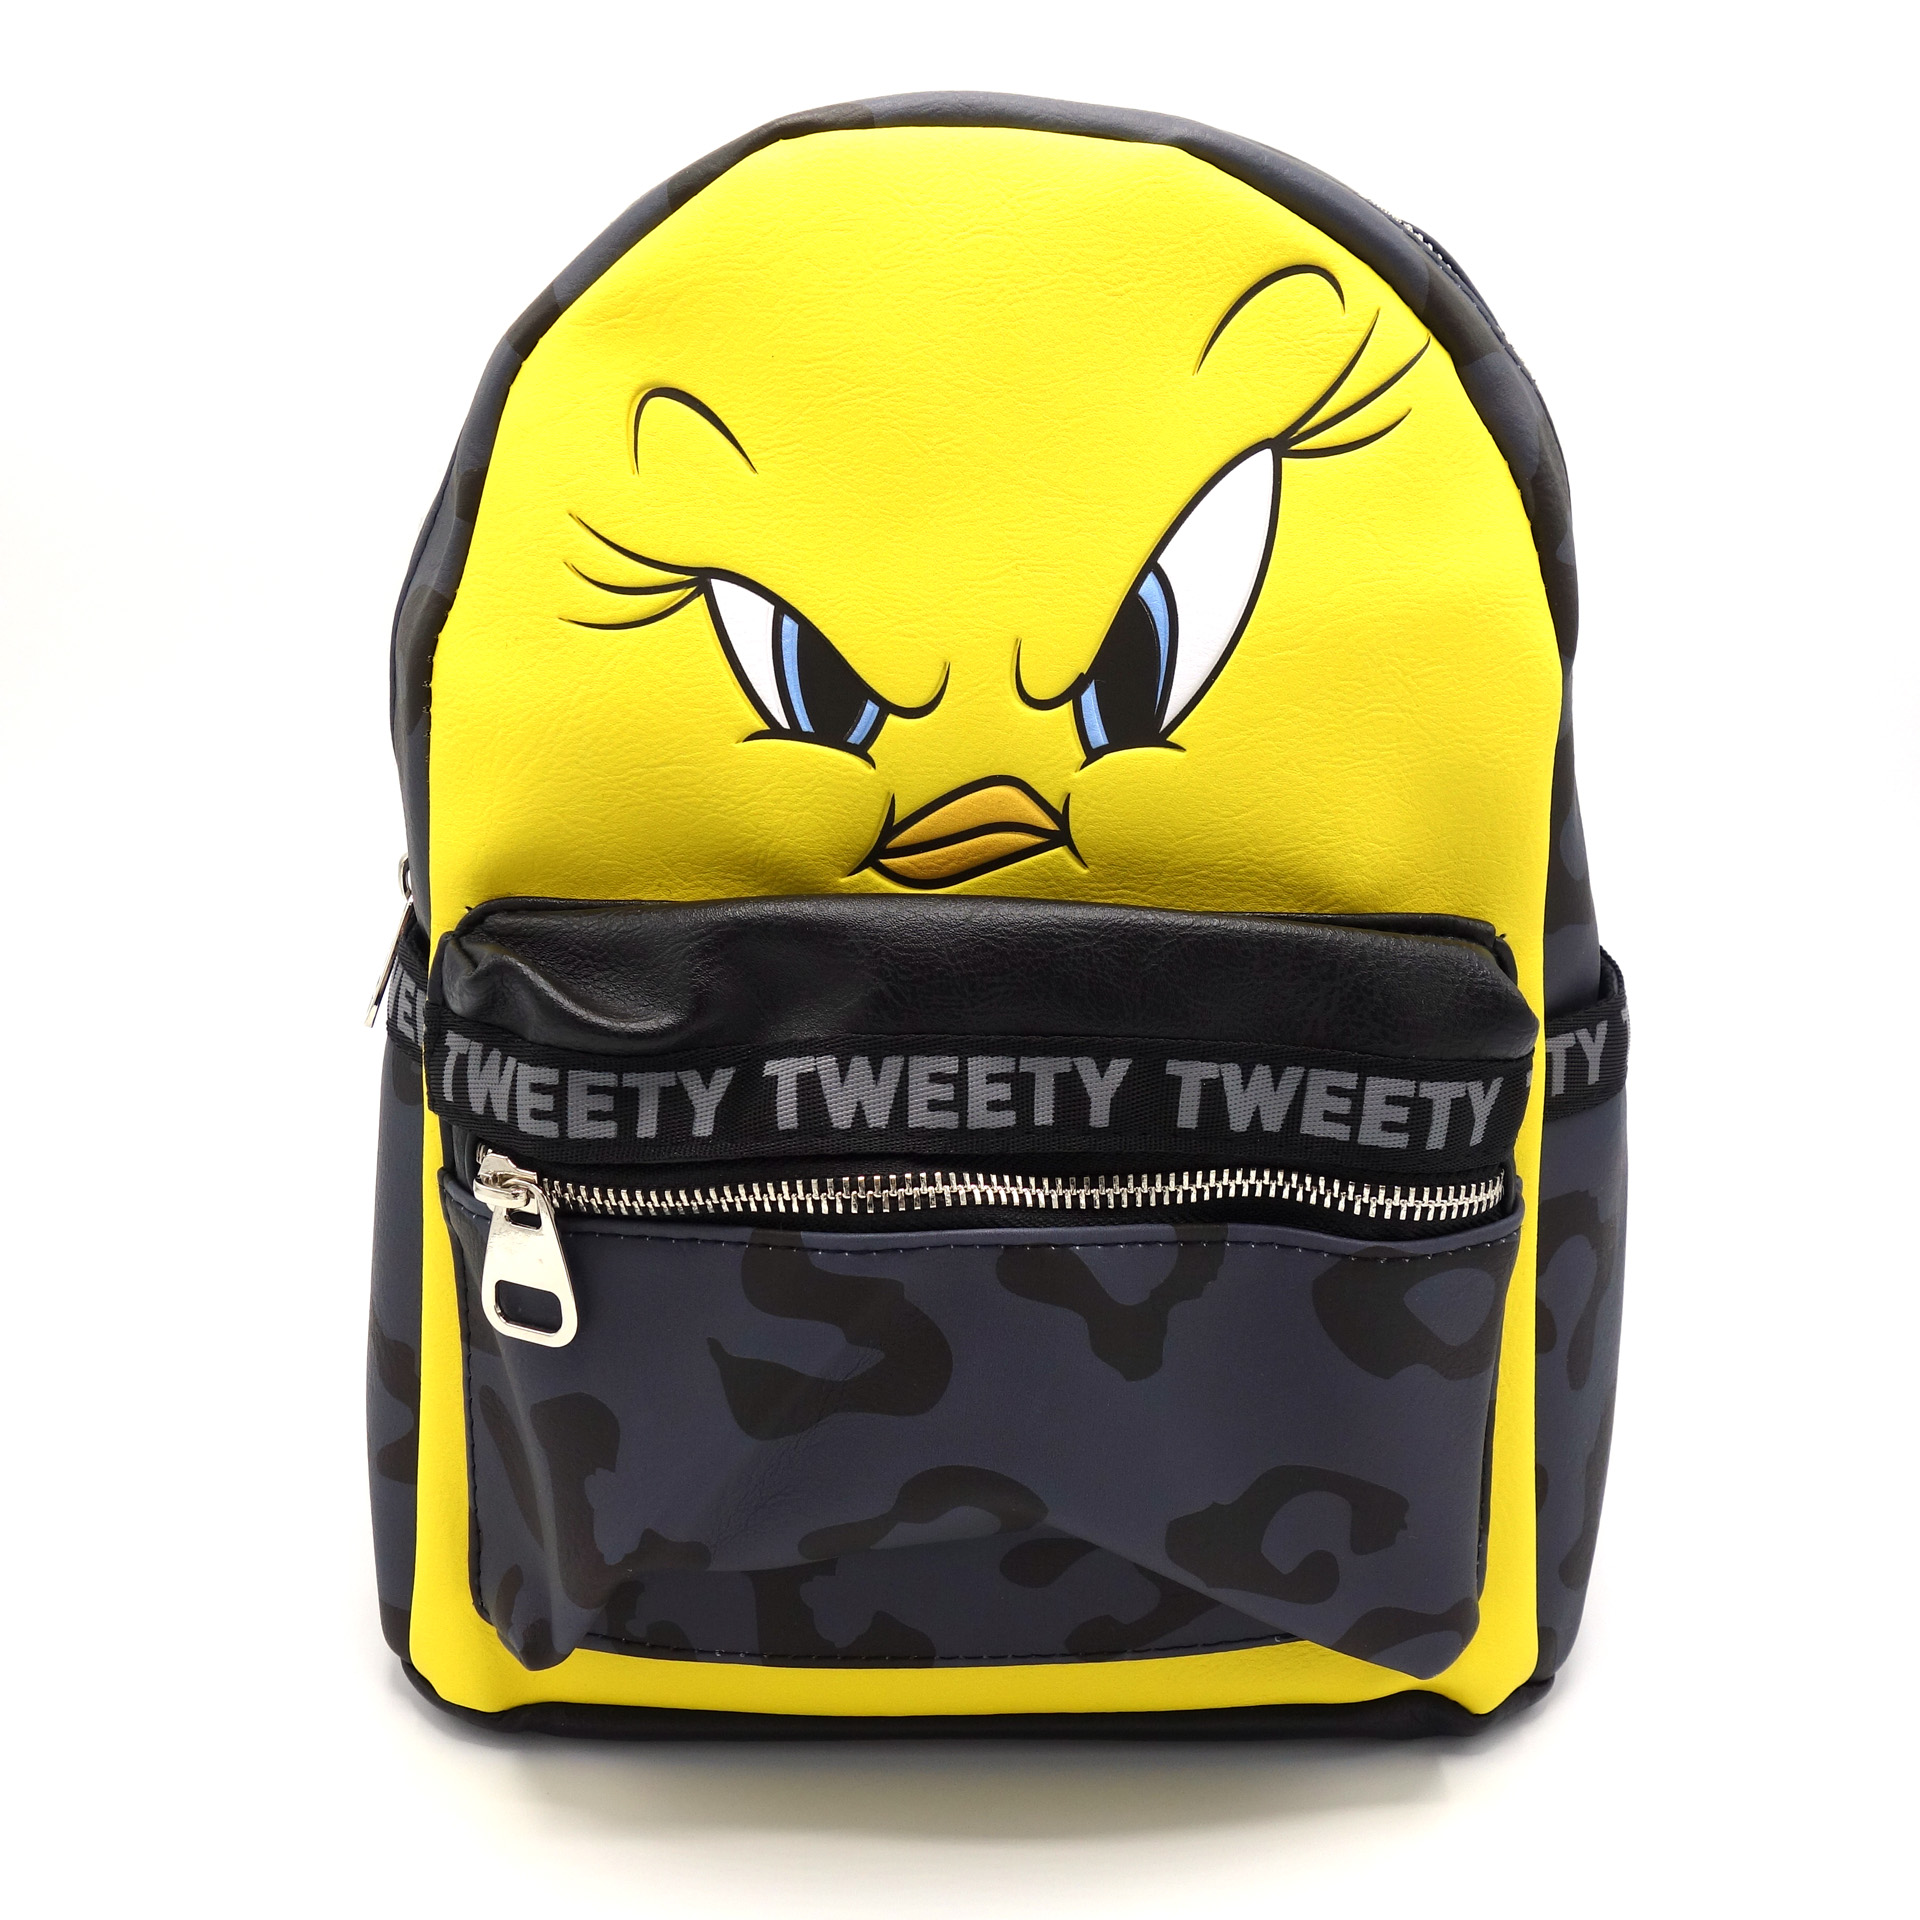 Warner Brothers Rucksack Angry Tweety Looney Tunes Tasche